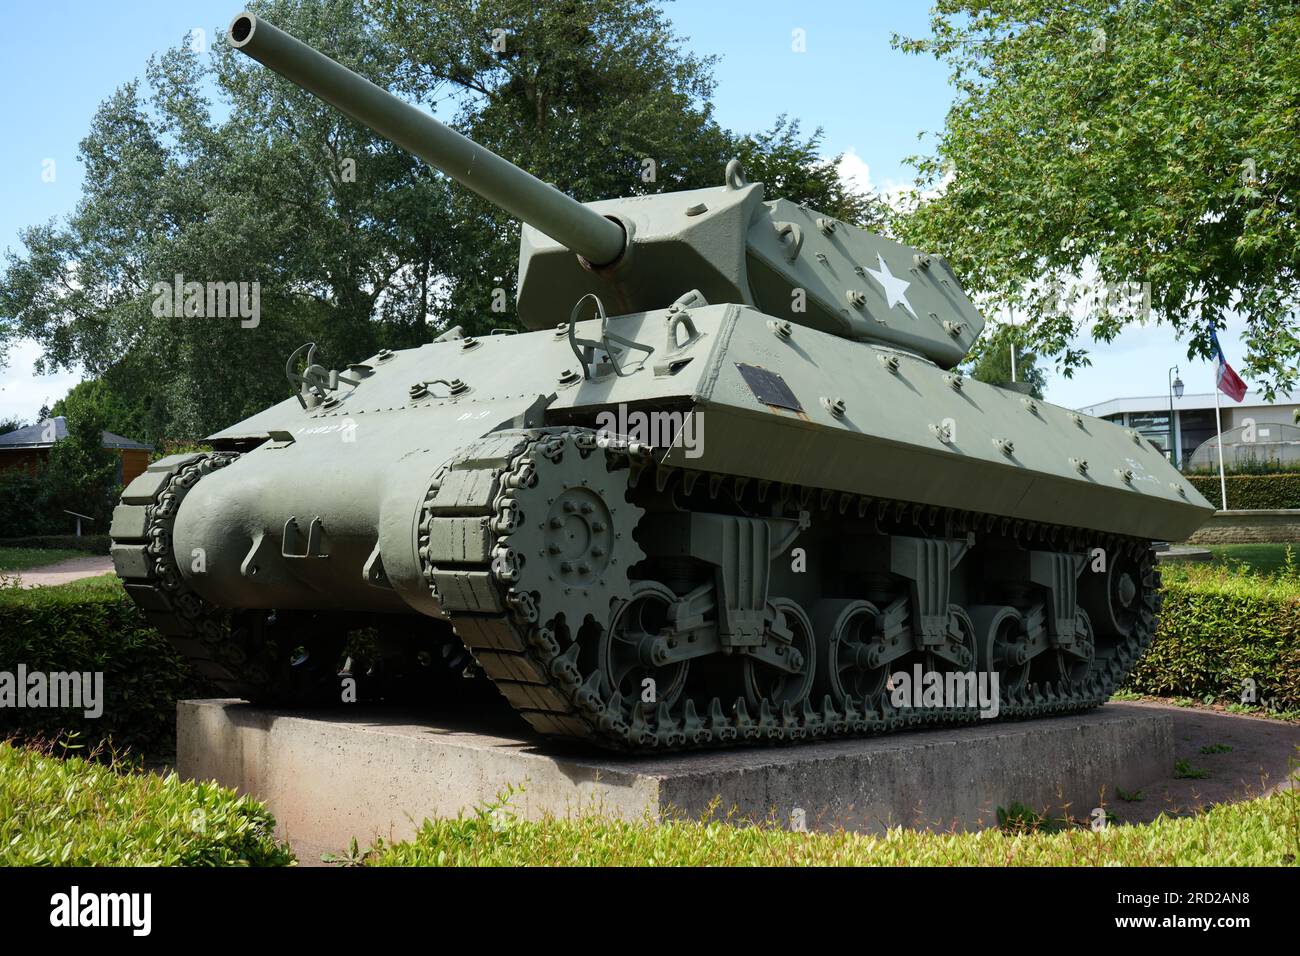 M10 Panzerzerstörer, basierend auf dem M4 Sherman Panzer, im Museum zur Schlacht der Normandie, Bayeux, Frankreich. Stockfoto